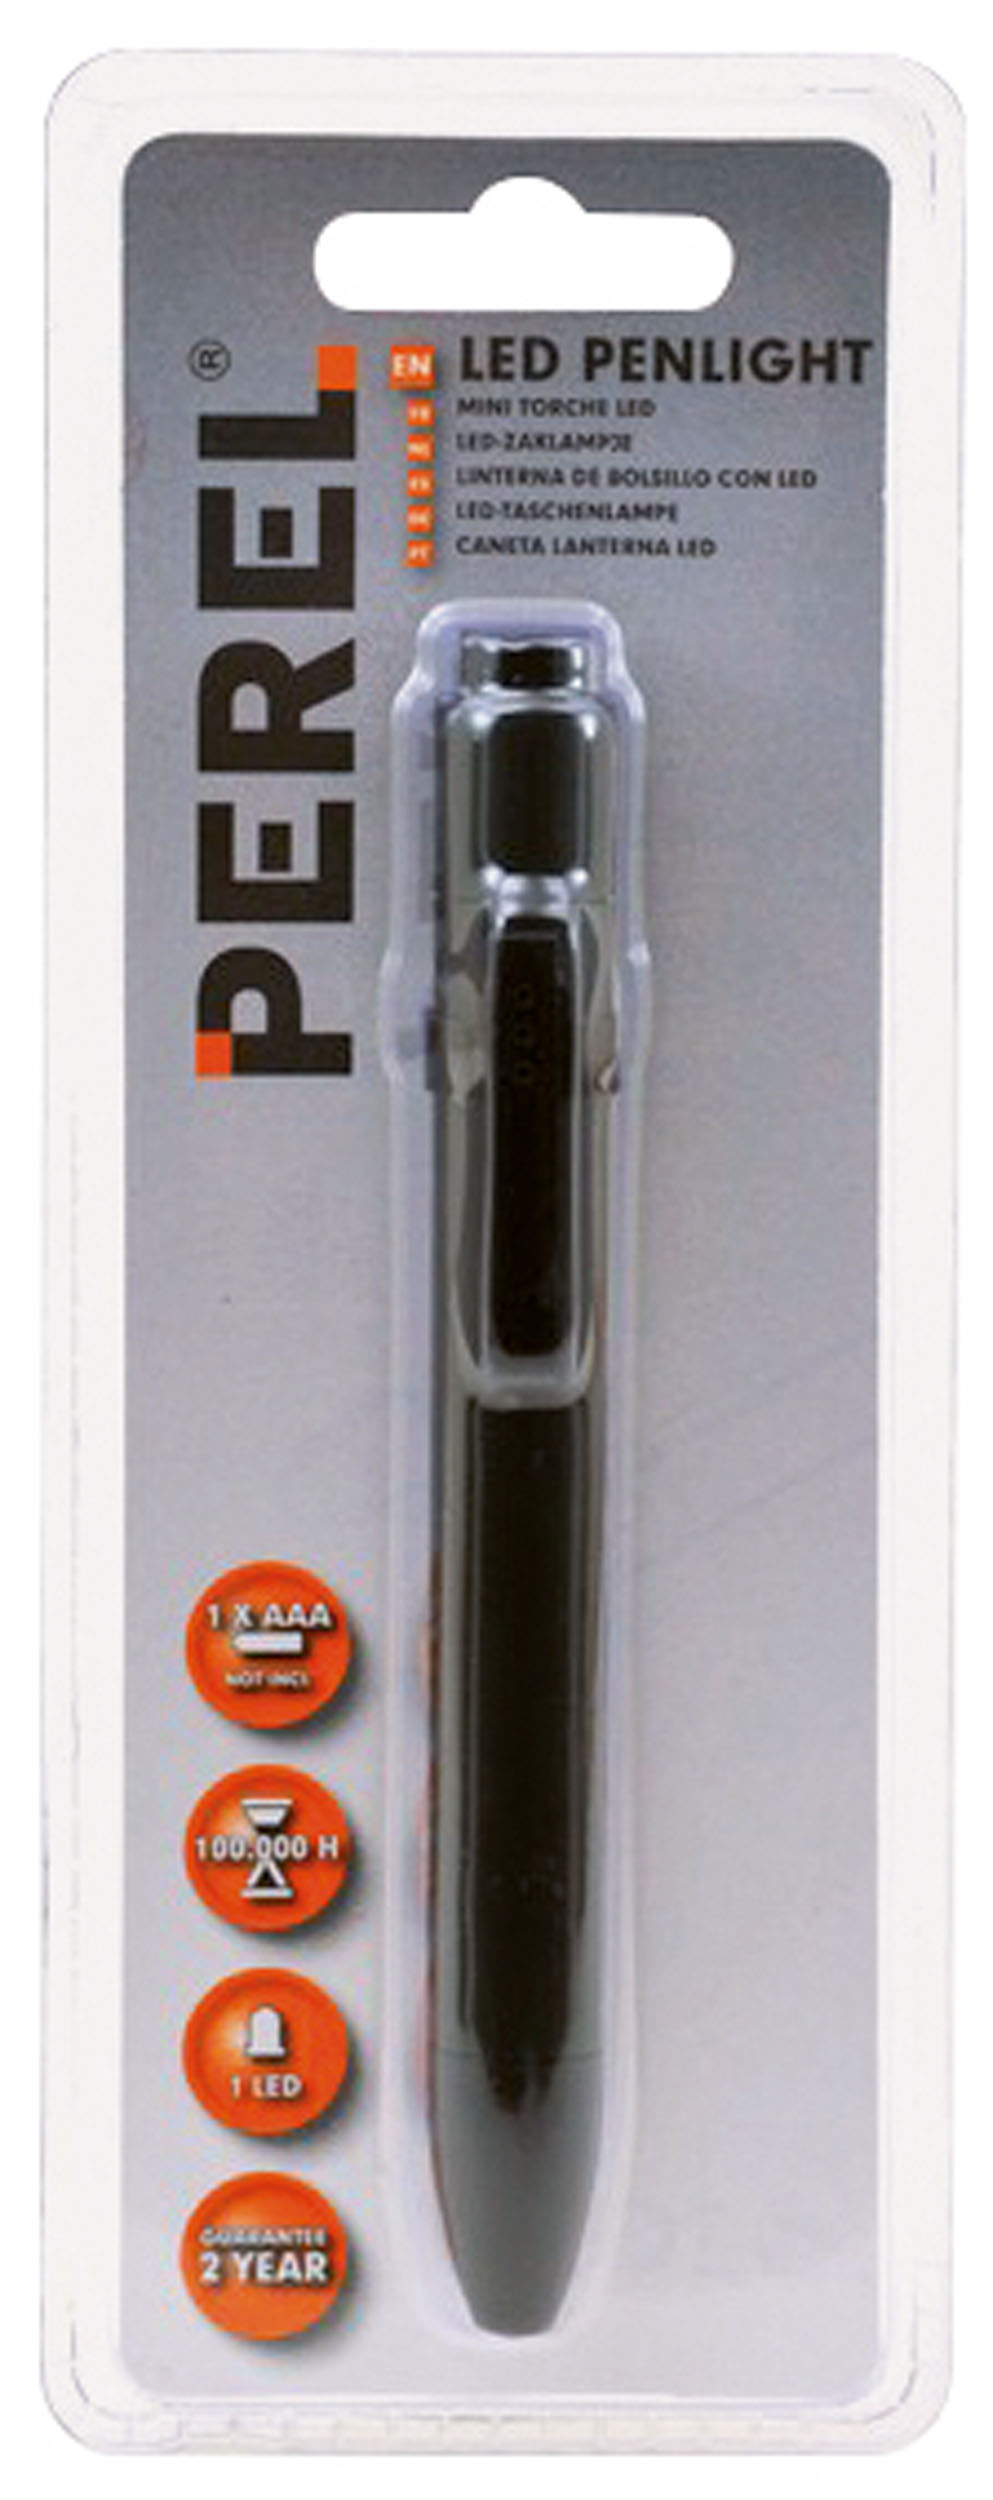 Lampe stylo Stylo à bille de métal de lumière à LED 2 en 1 jusqu'Stylo avec  lumière bleue - Chine Stylos LED, stylo à bille de métal